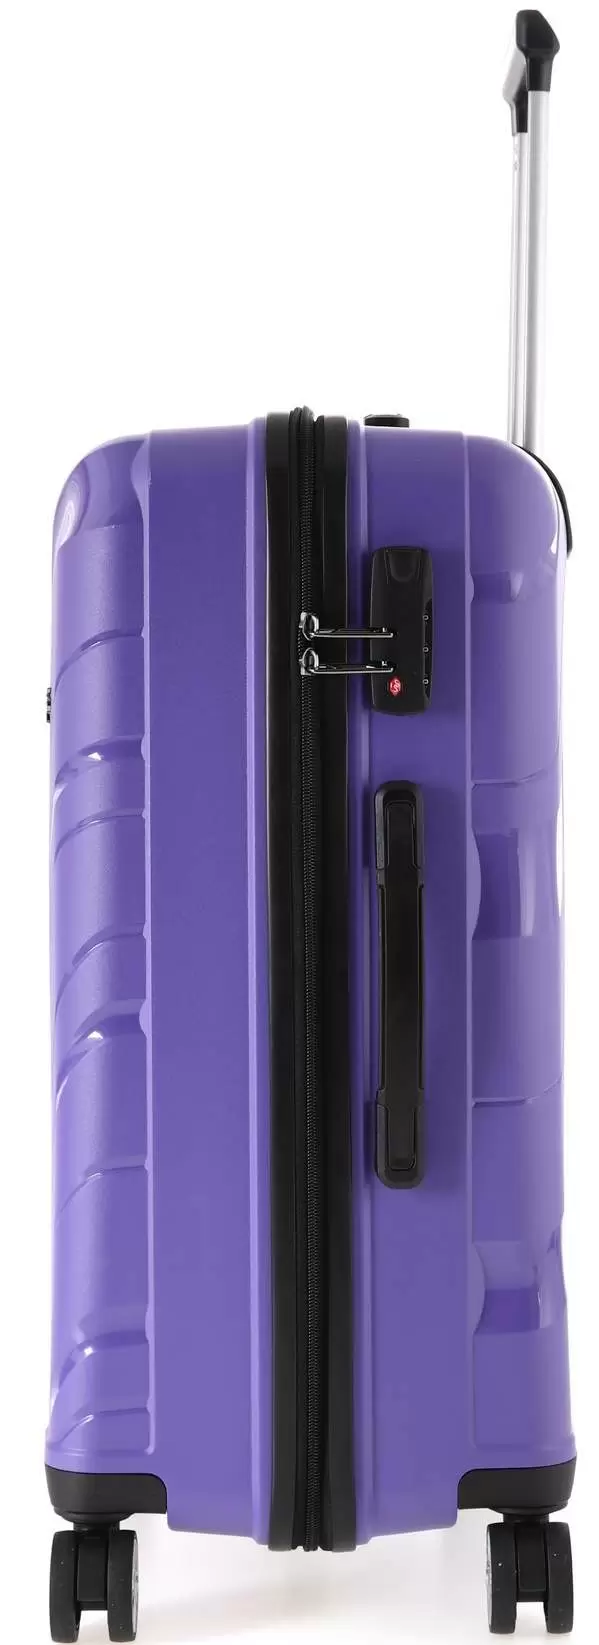 Чемодан CCS 5223 S, фиолетовый